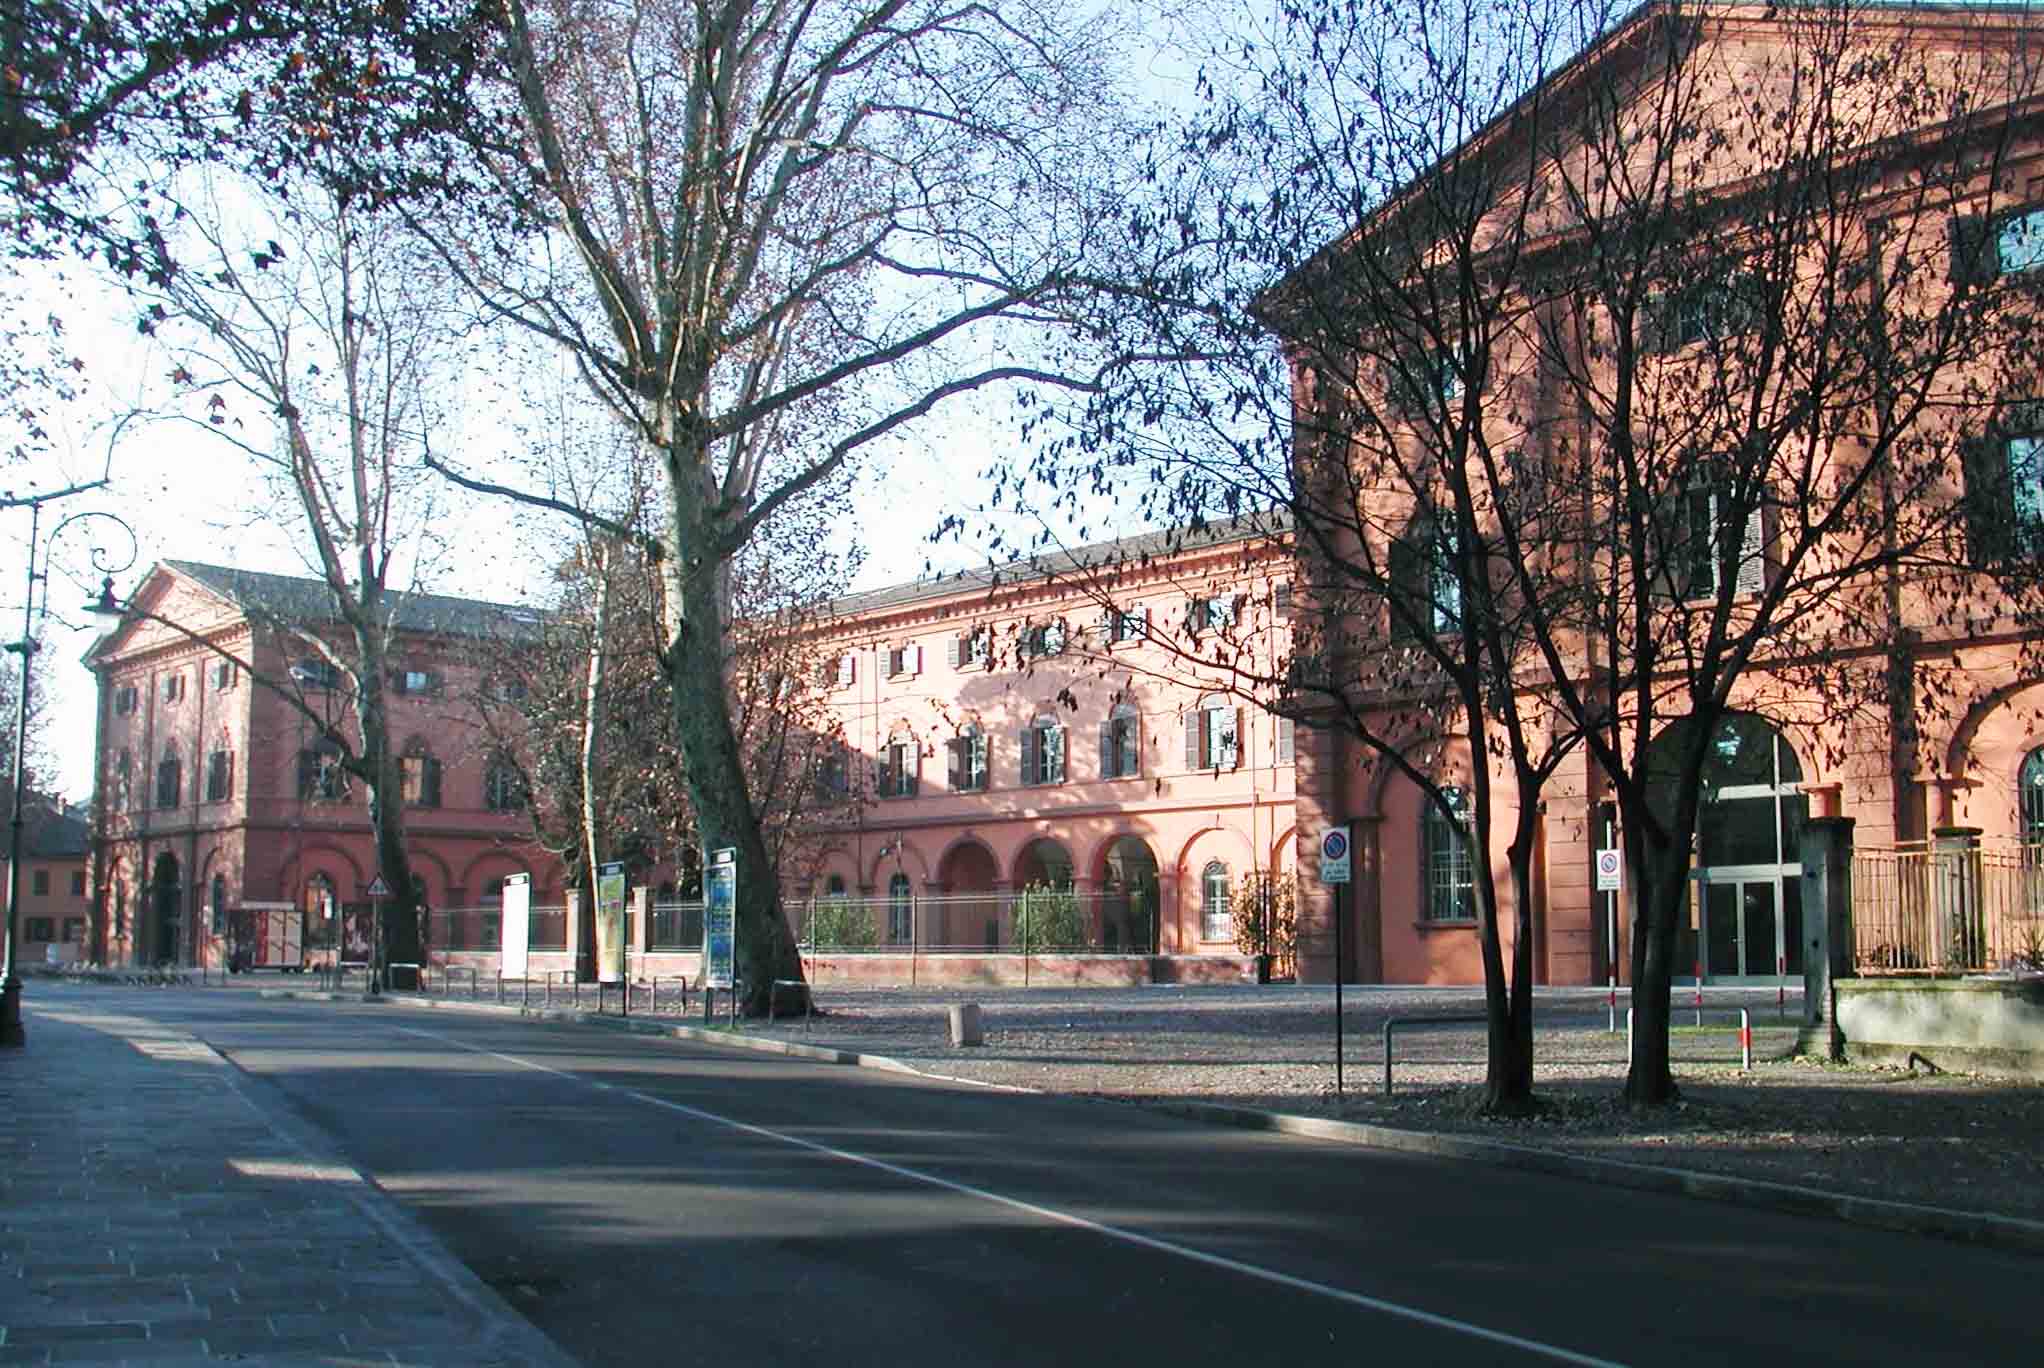 Exterior of University of Modena and Reggio Emilia building on campus in Reggio Emilia, Italy.